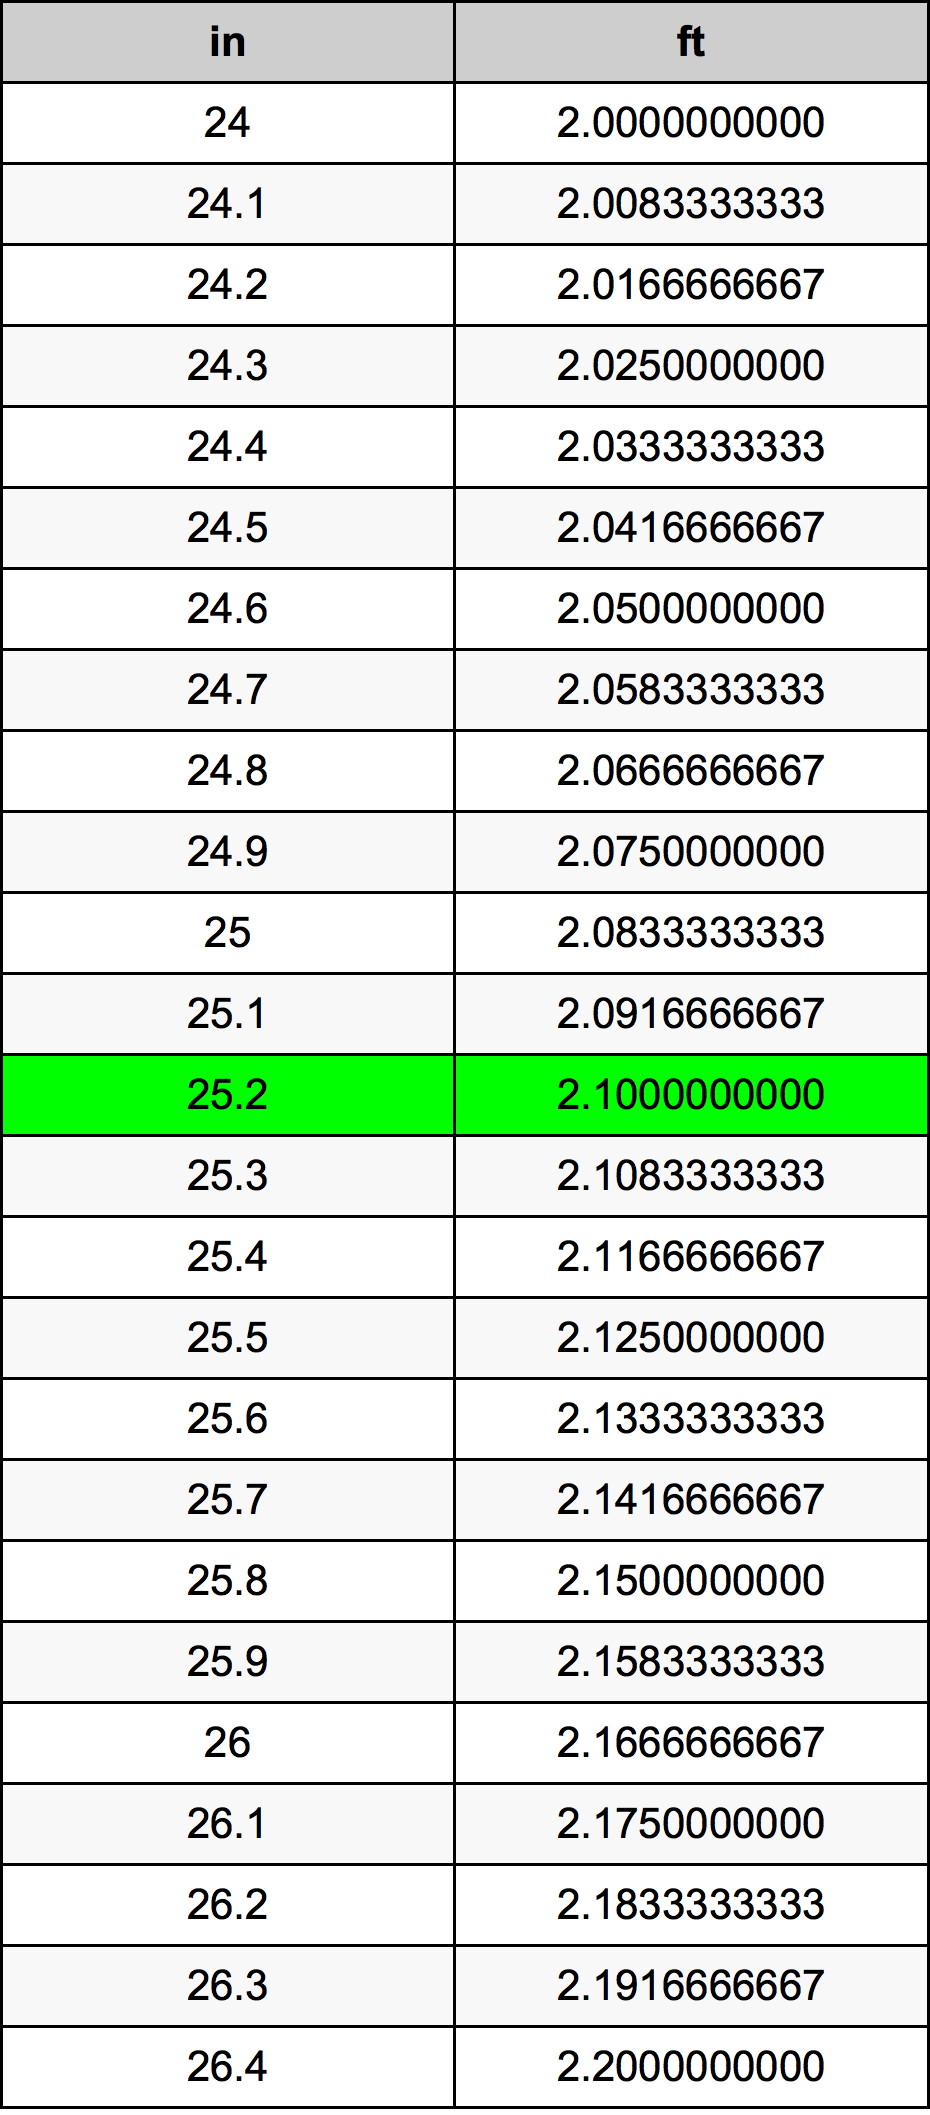 25.2 Pulzier konverżjoni tabella